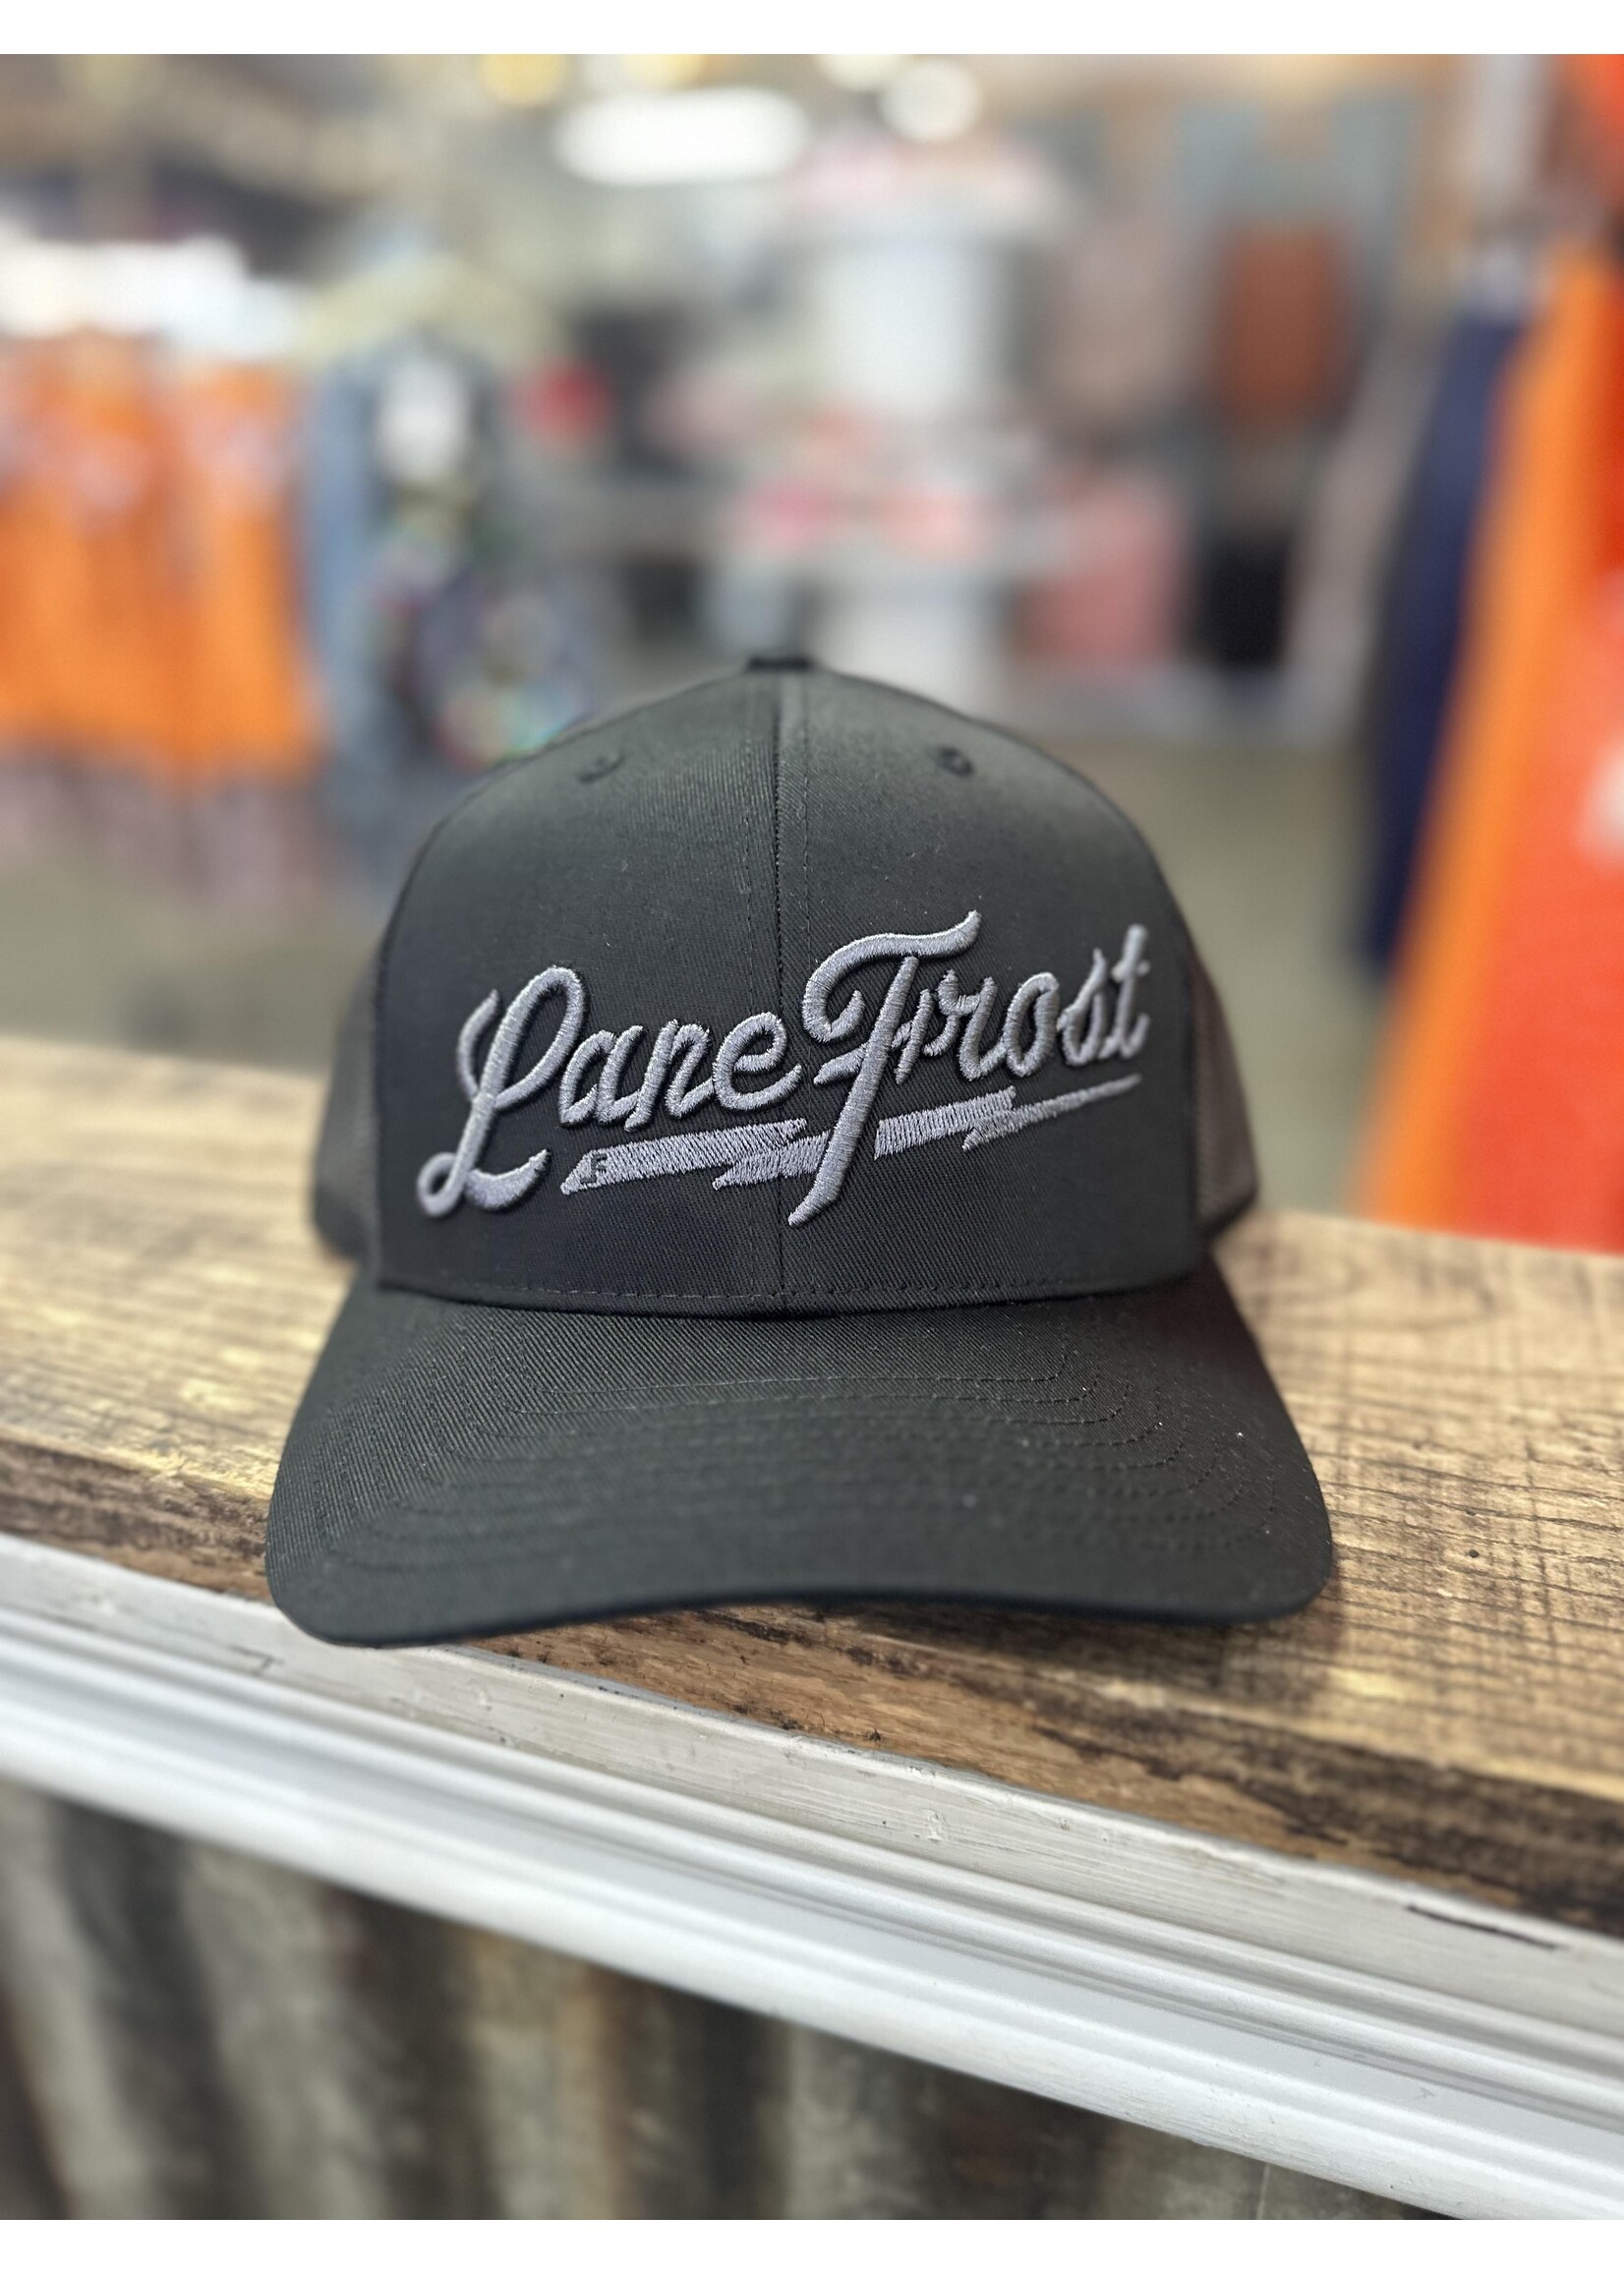 Lane Frost Lane Frost Hats 3